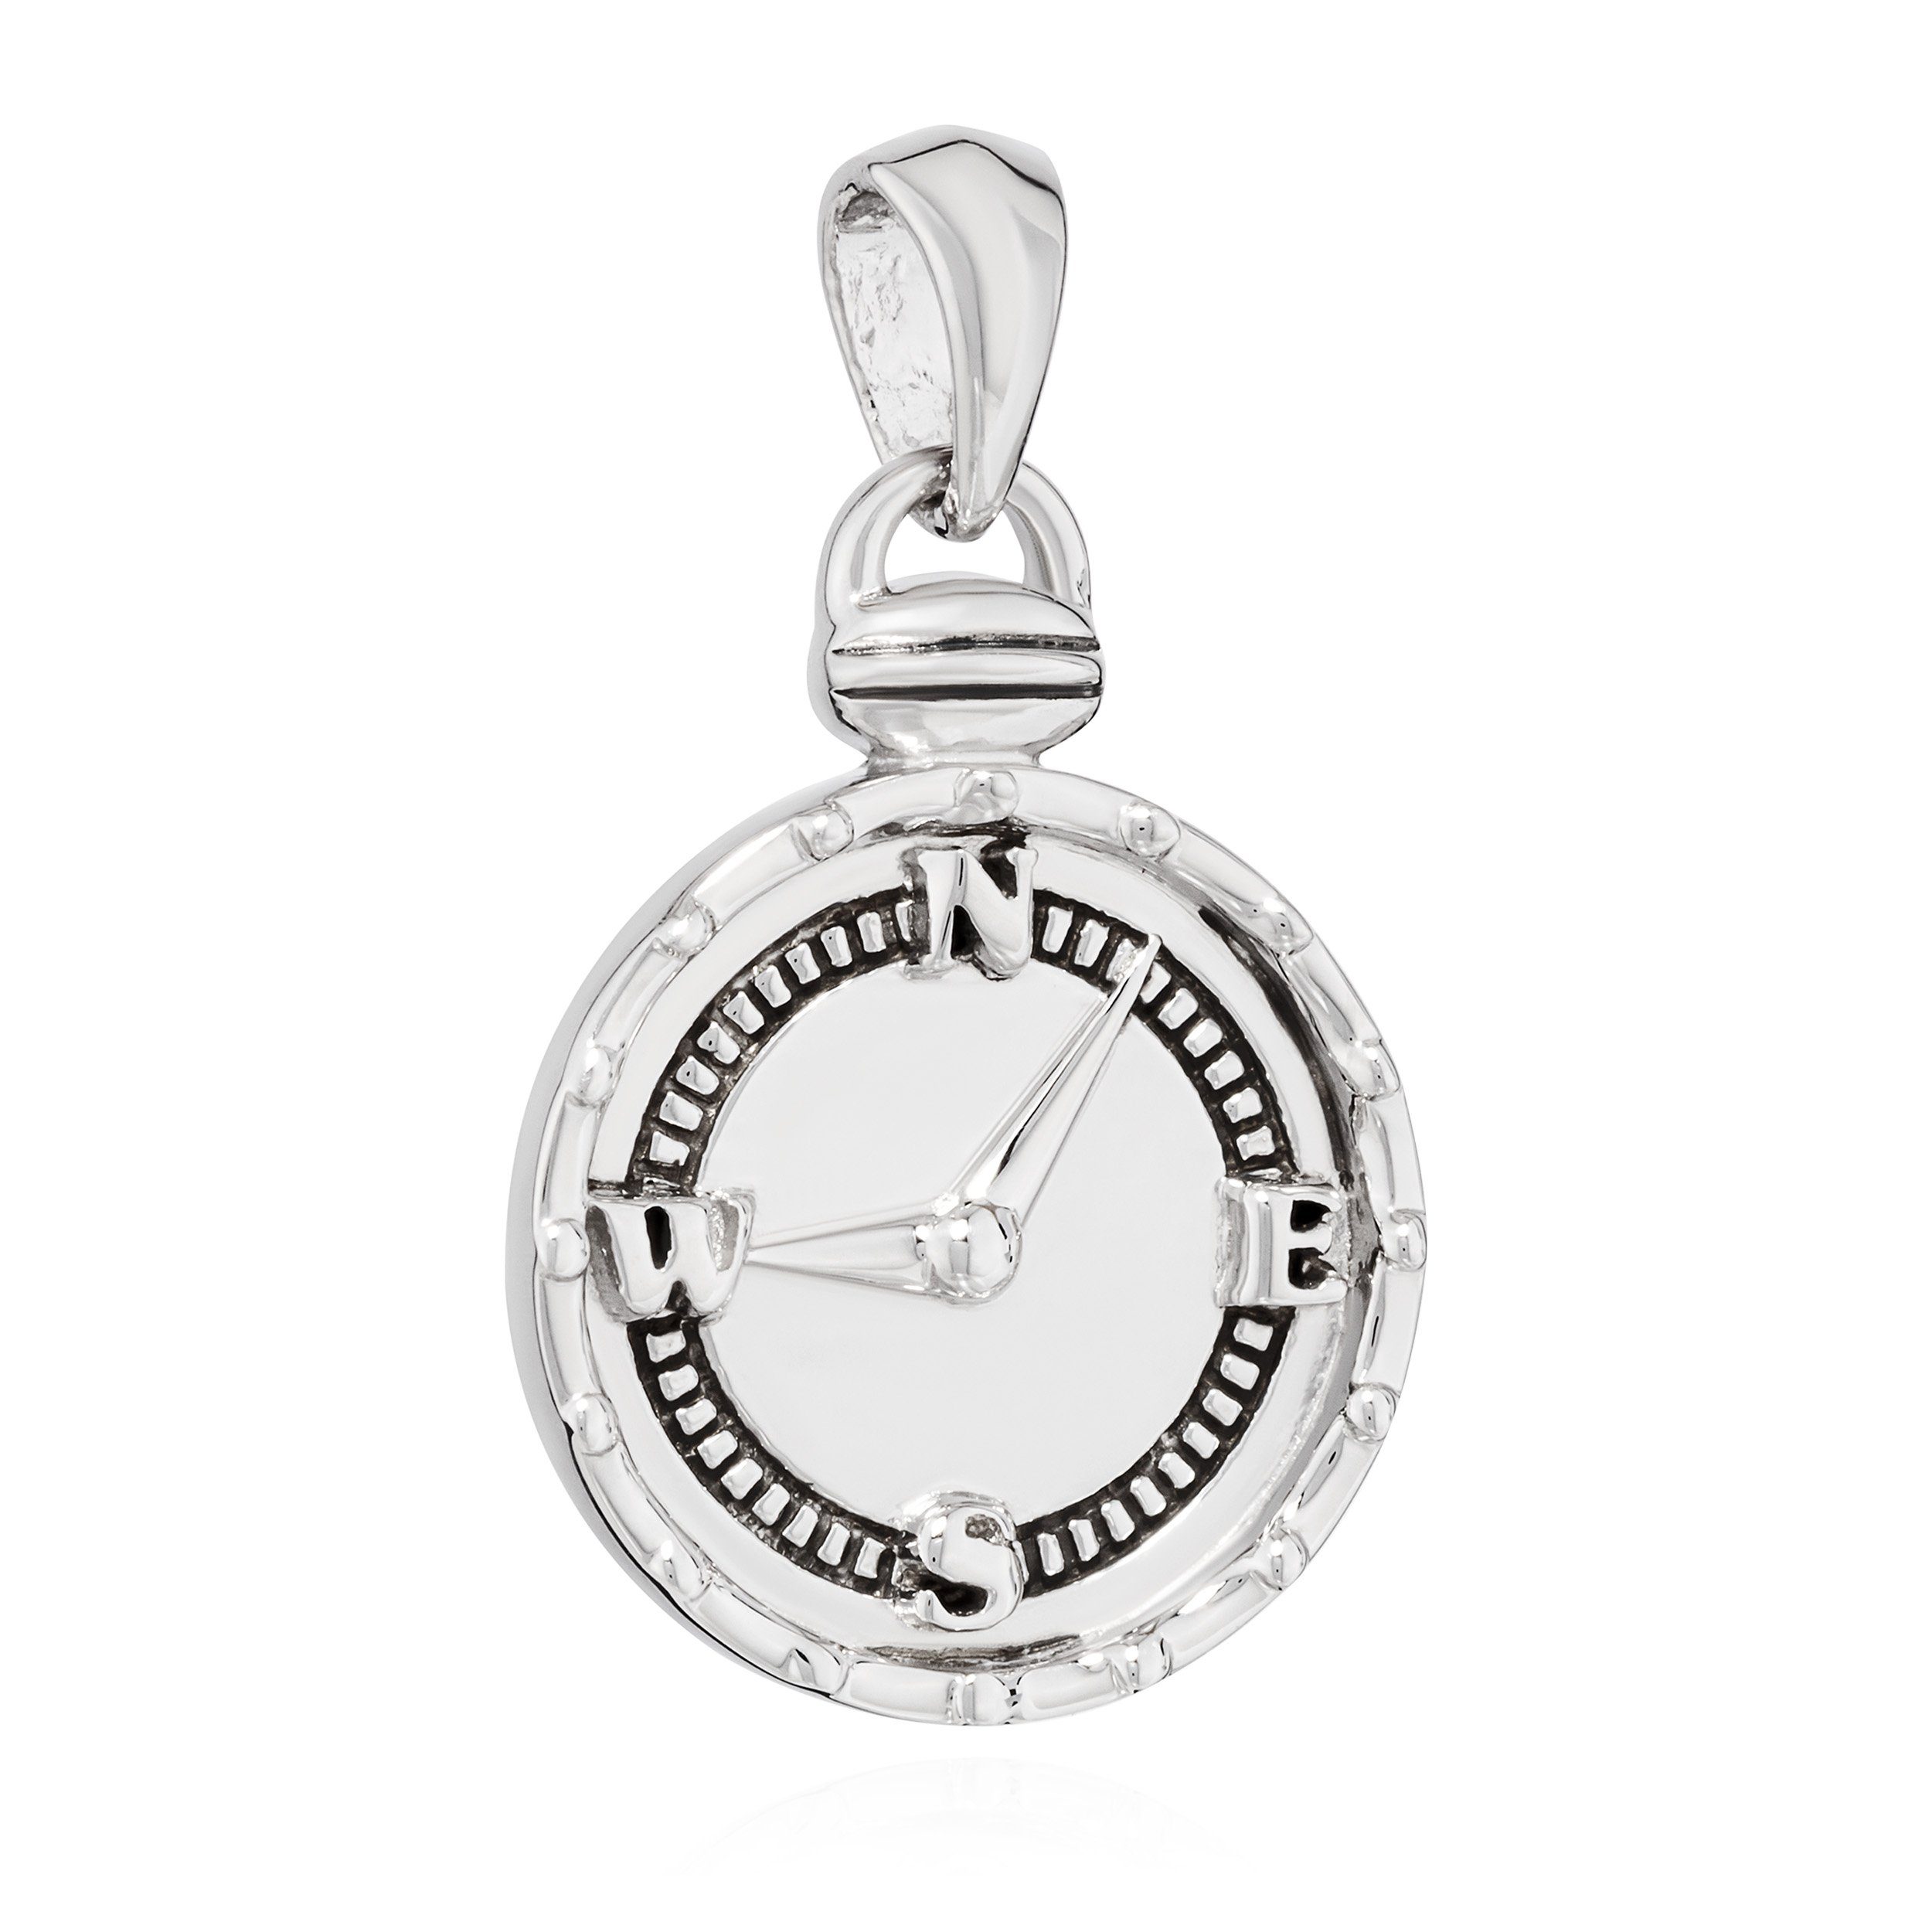 NKlaus Kettenanhänger Kettenanhänger Halskette 15mm für Schmuckanhänger 925 Silber Kompass